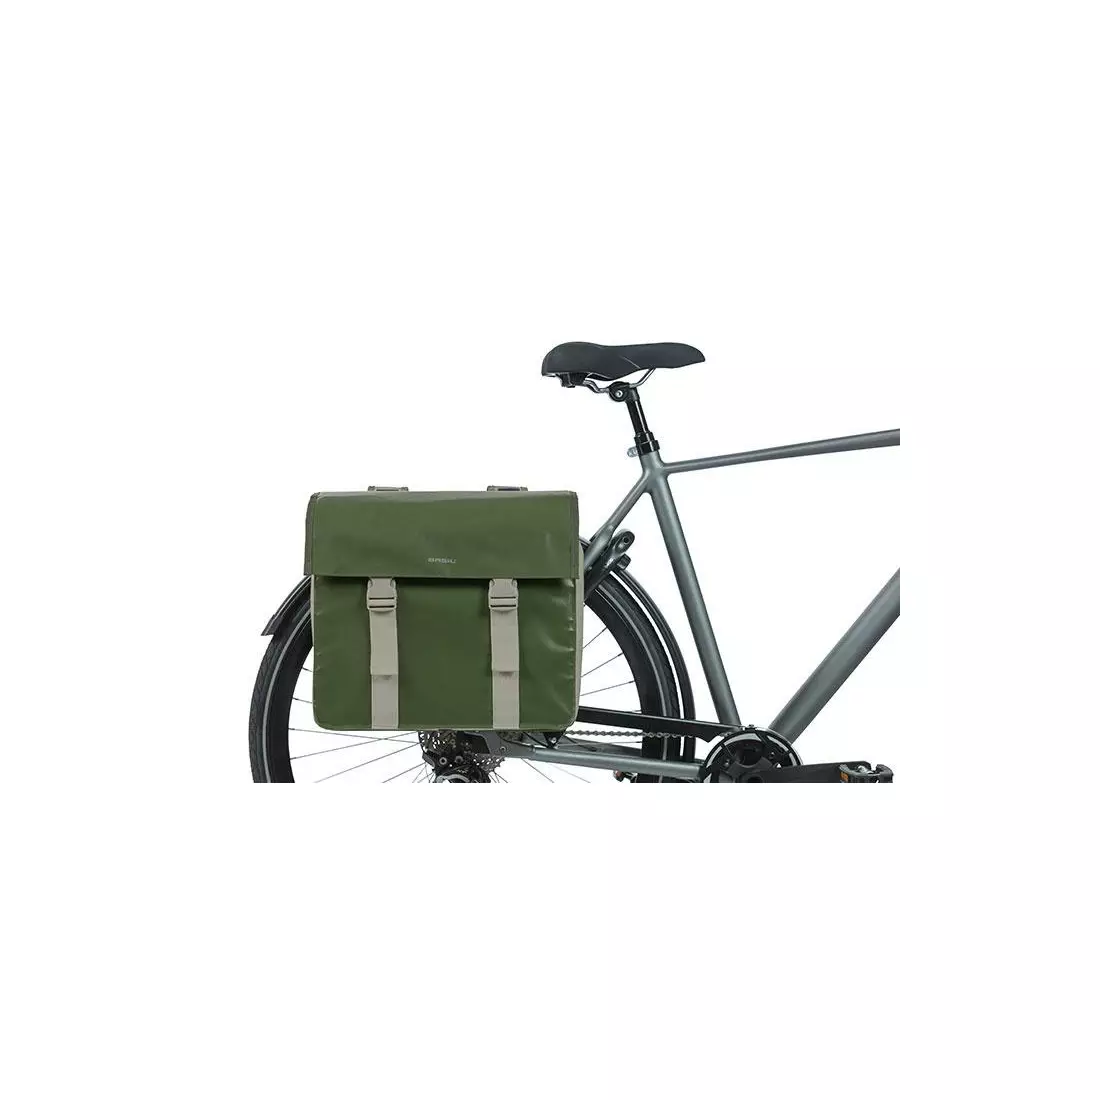 BASIL dvojitá taška na bicykel URBAN LOAD TORBA DOUBLE BAG, green/sand 18226